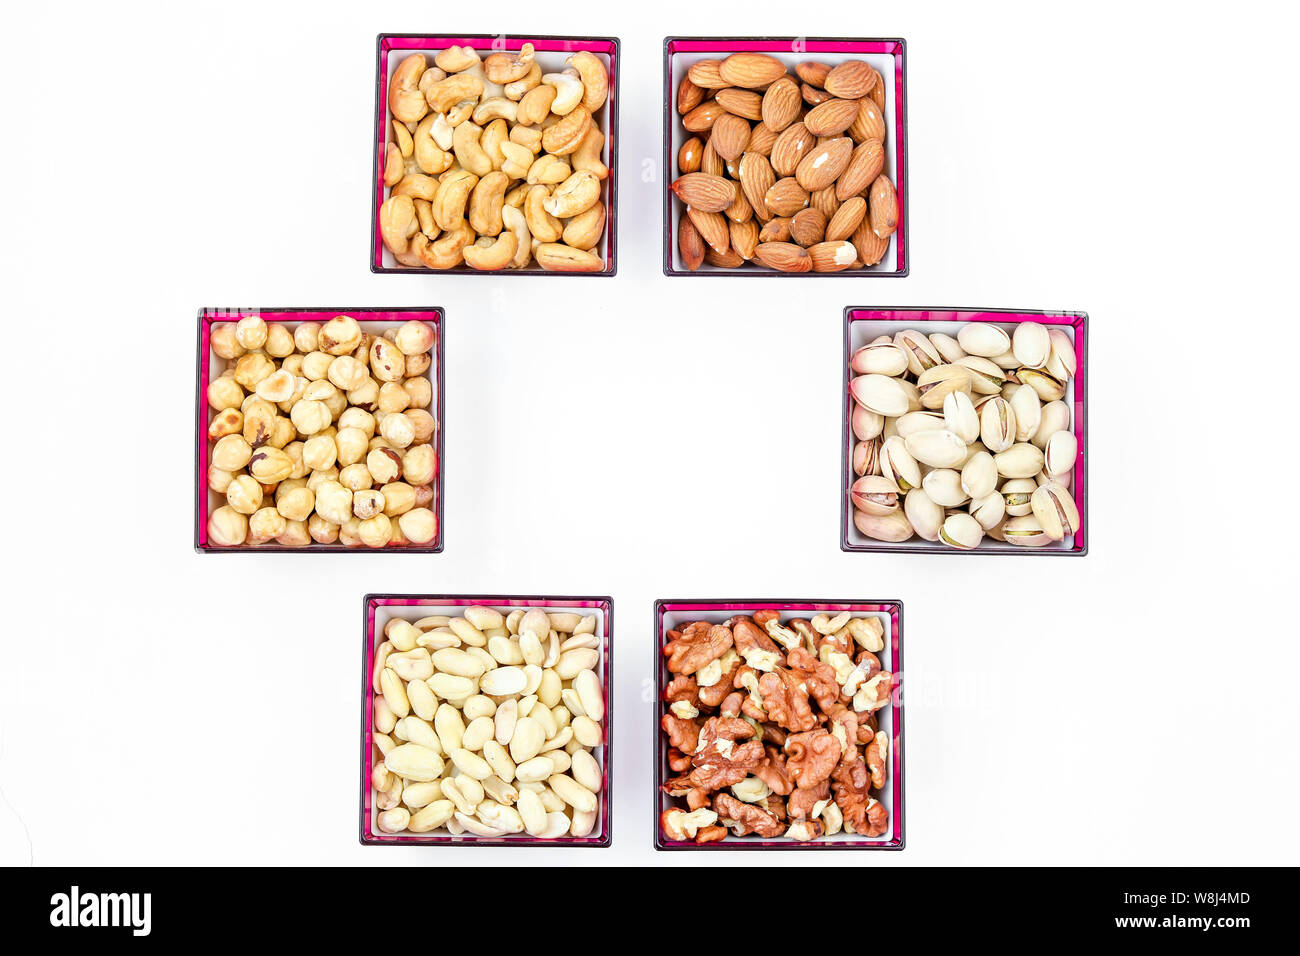 Verschiedene Arten von Muttern: Erdnüssen, Cashew-Kernen, Mandeln, Haselnüsse, Walnüsse, Pistazien, horizontale Ausrichtung, Kopieren, Ansicht von oben Muttern eingestellt Stockfoto